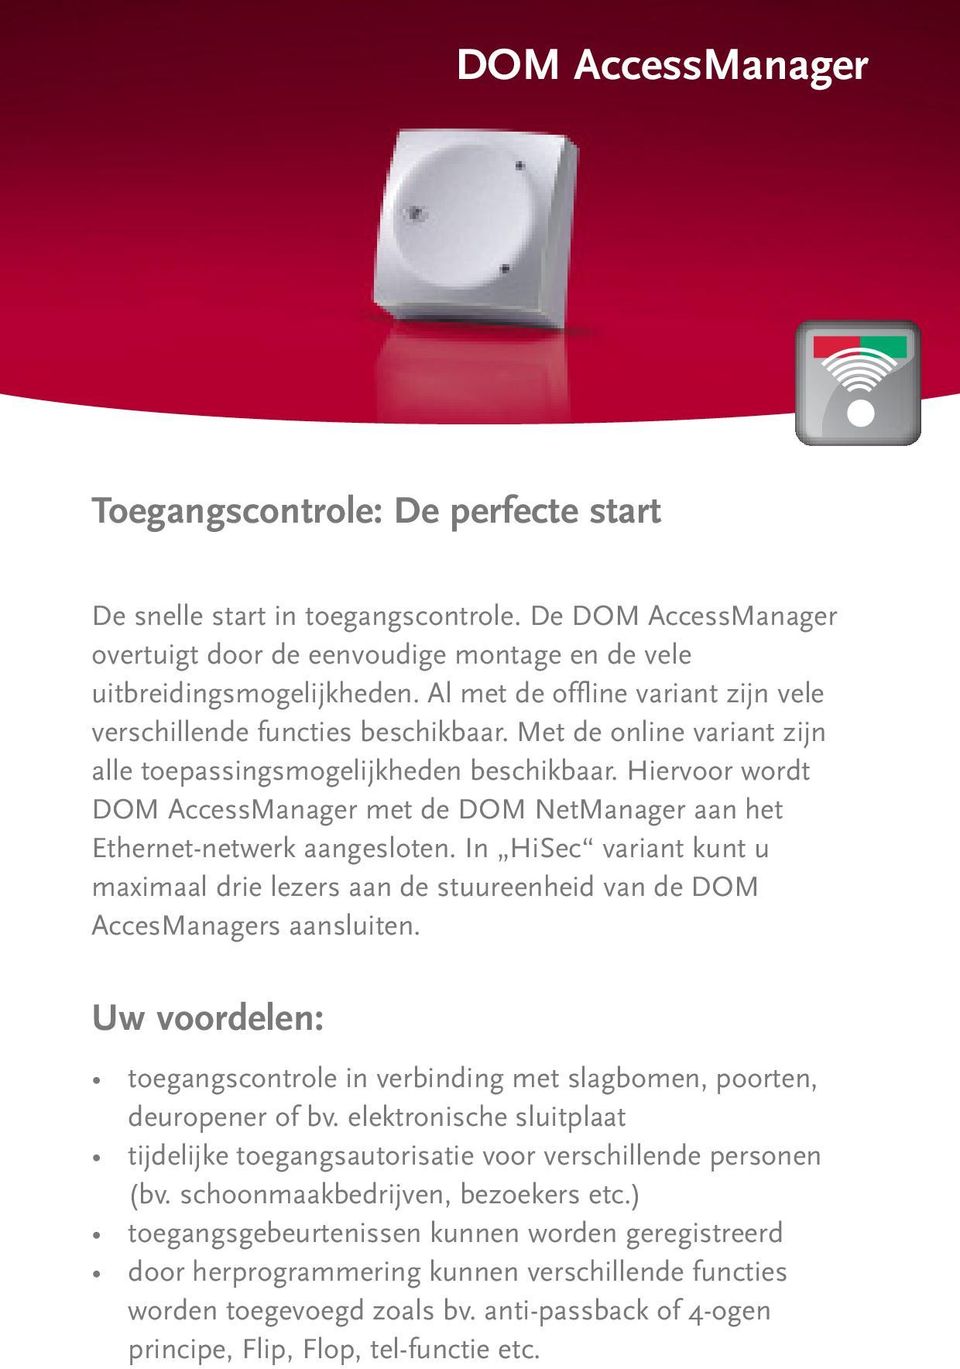 Hiervoor wordt DOM AccessManager met de DOM NetManager aan het Ethernet-netwerk aangesloten. In HiSec variant kunt u maimaal drie lezers aan de stuureenheid van de DOM AccesManagers aansluiten.